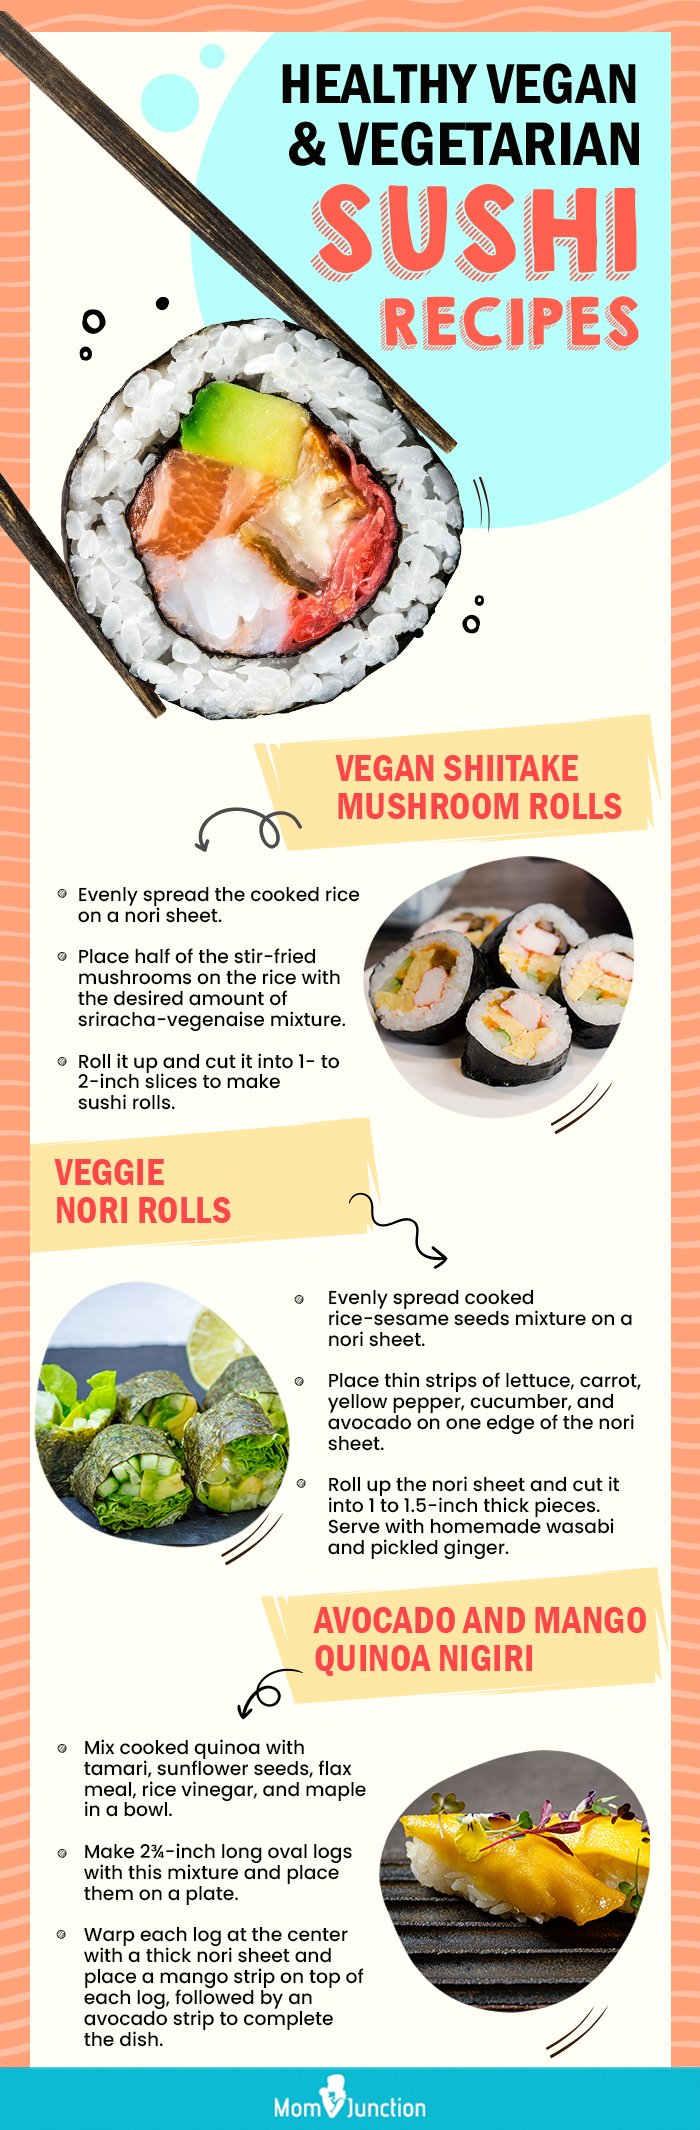 健康的纯素和素食寿司食谱(信息图)